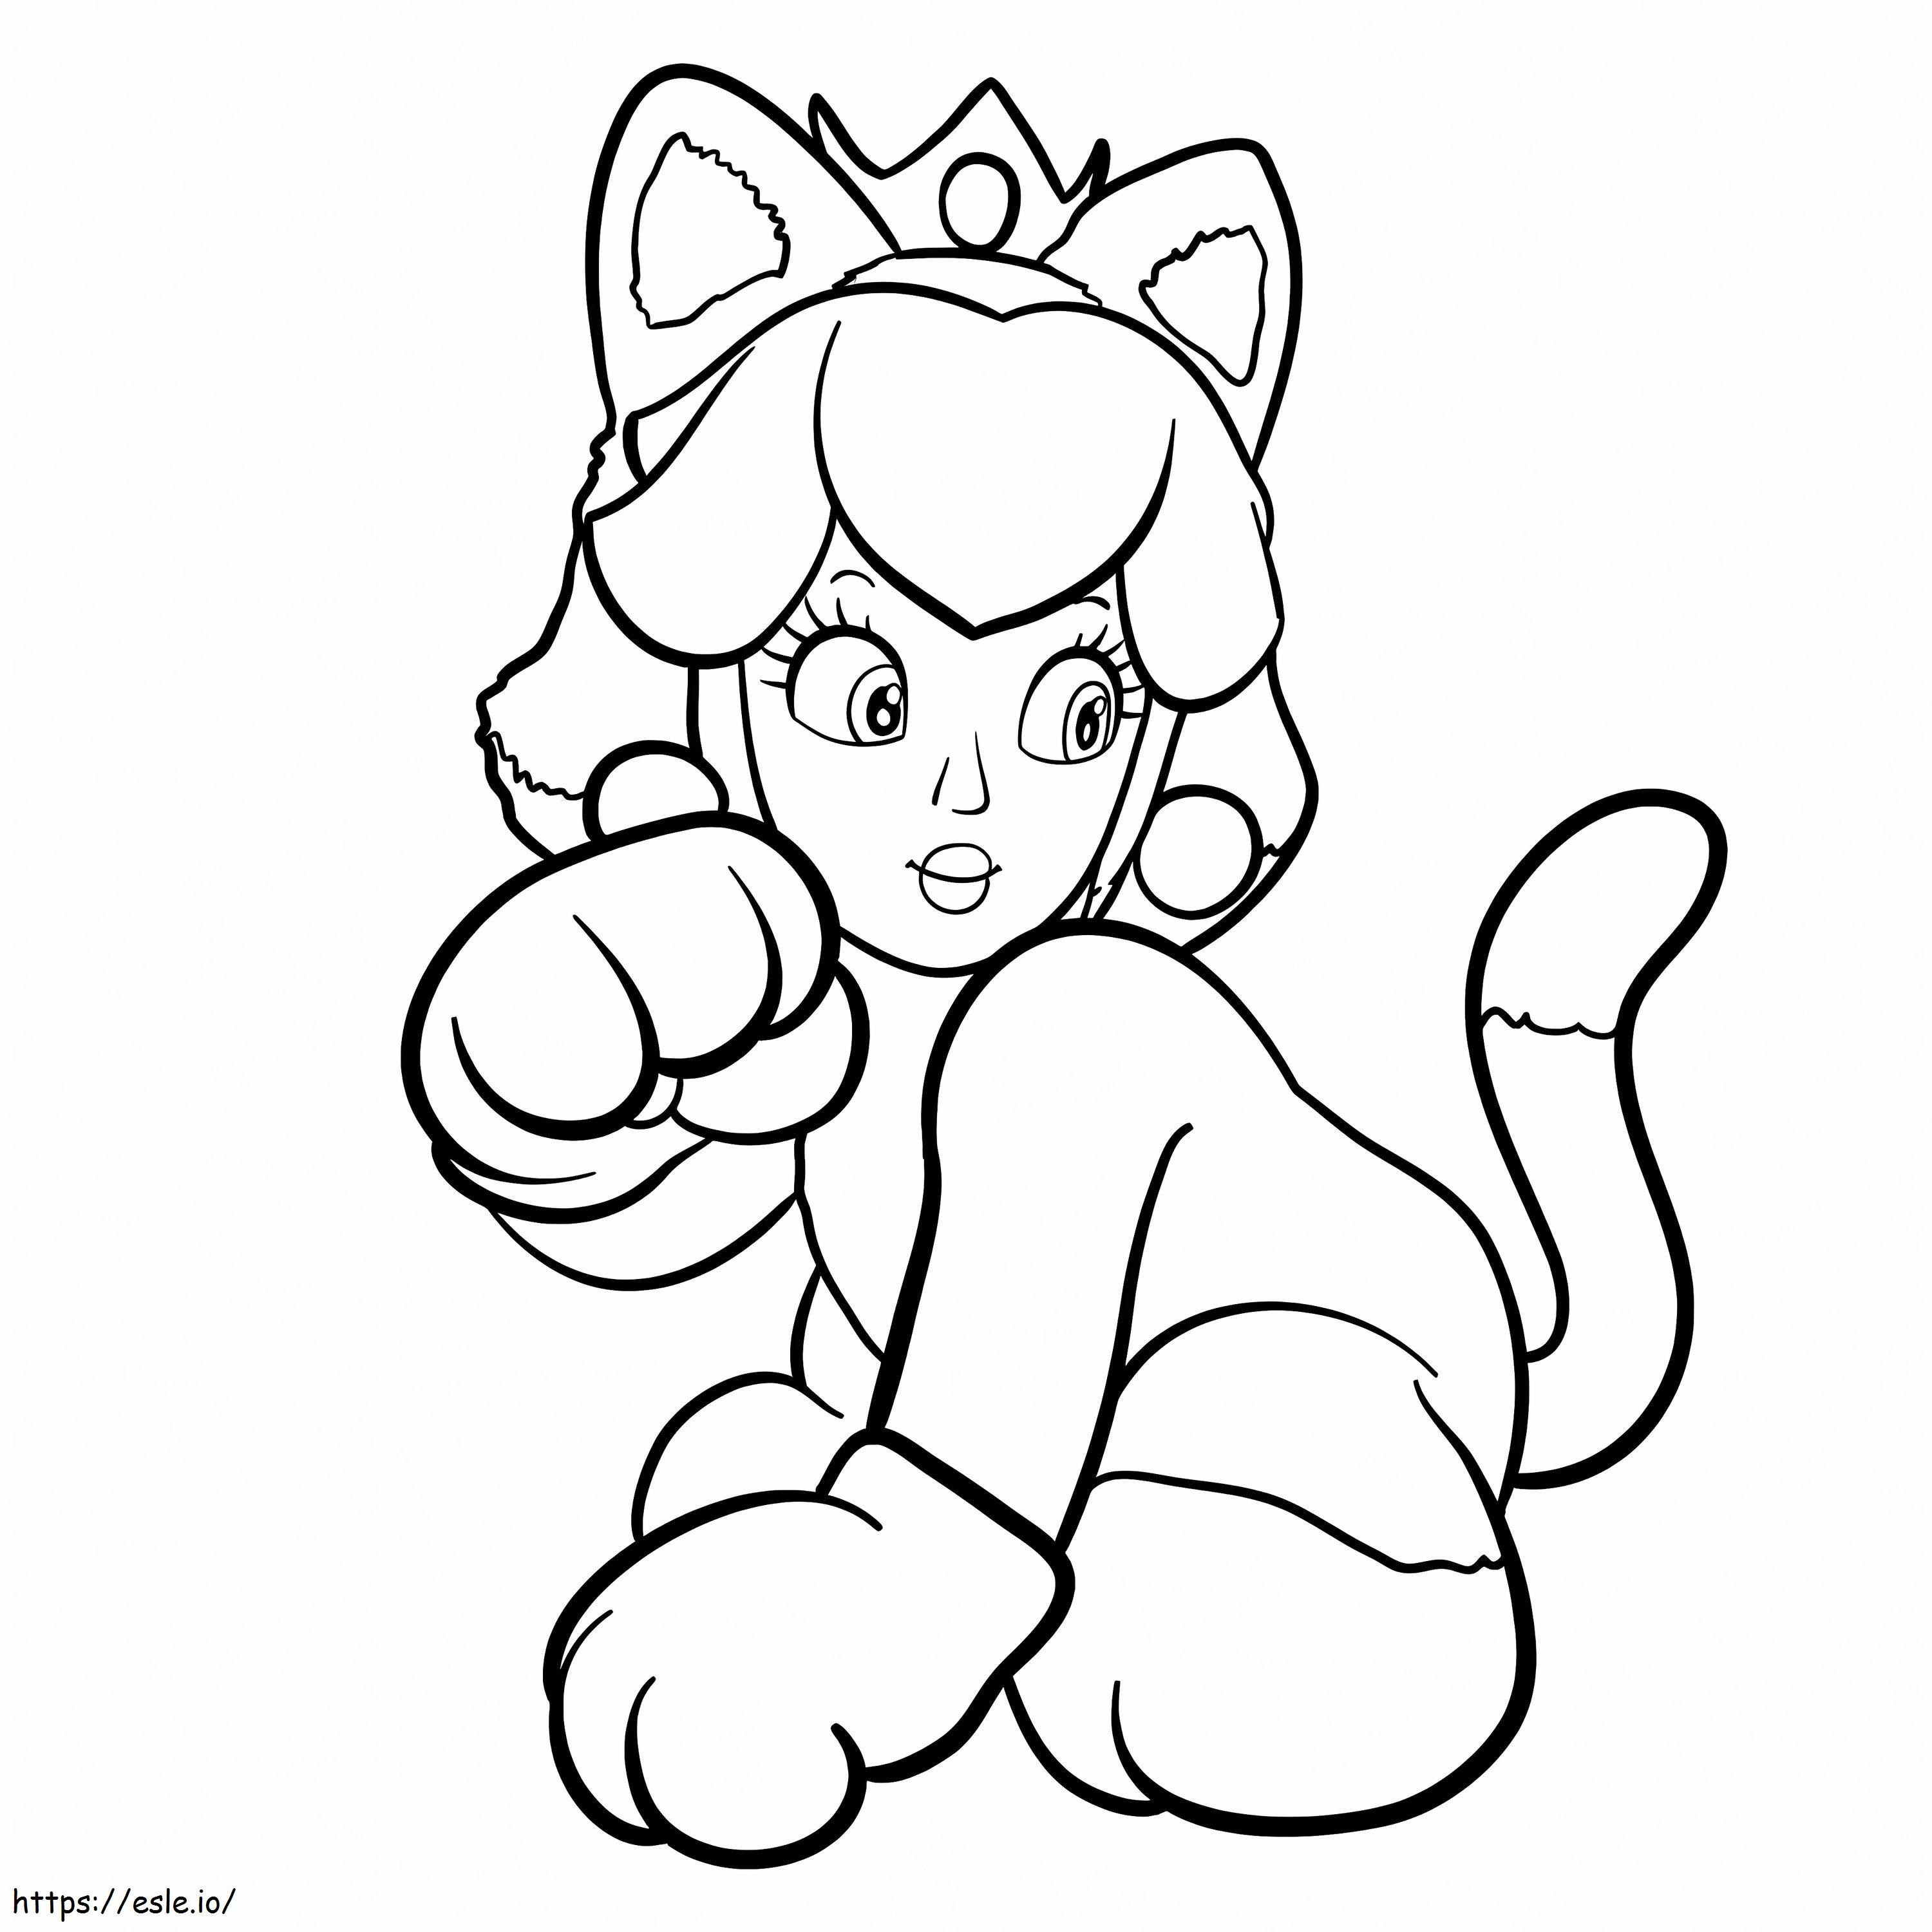 Księżniczka Peach w kostiumie kota kolorowanka